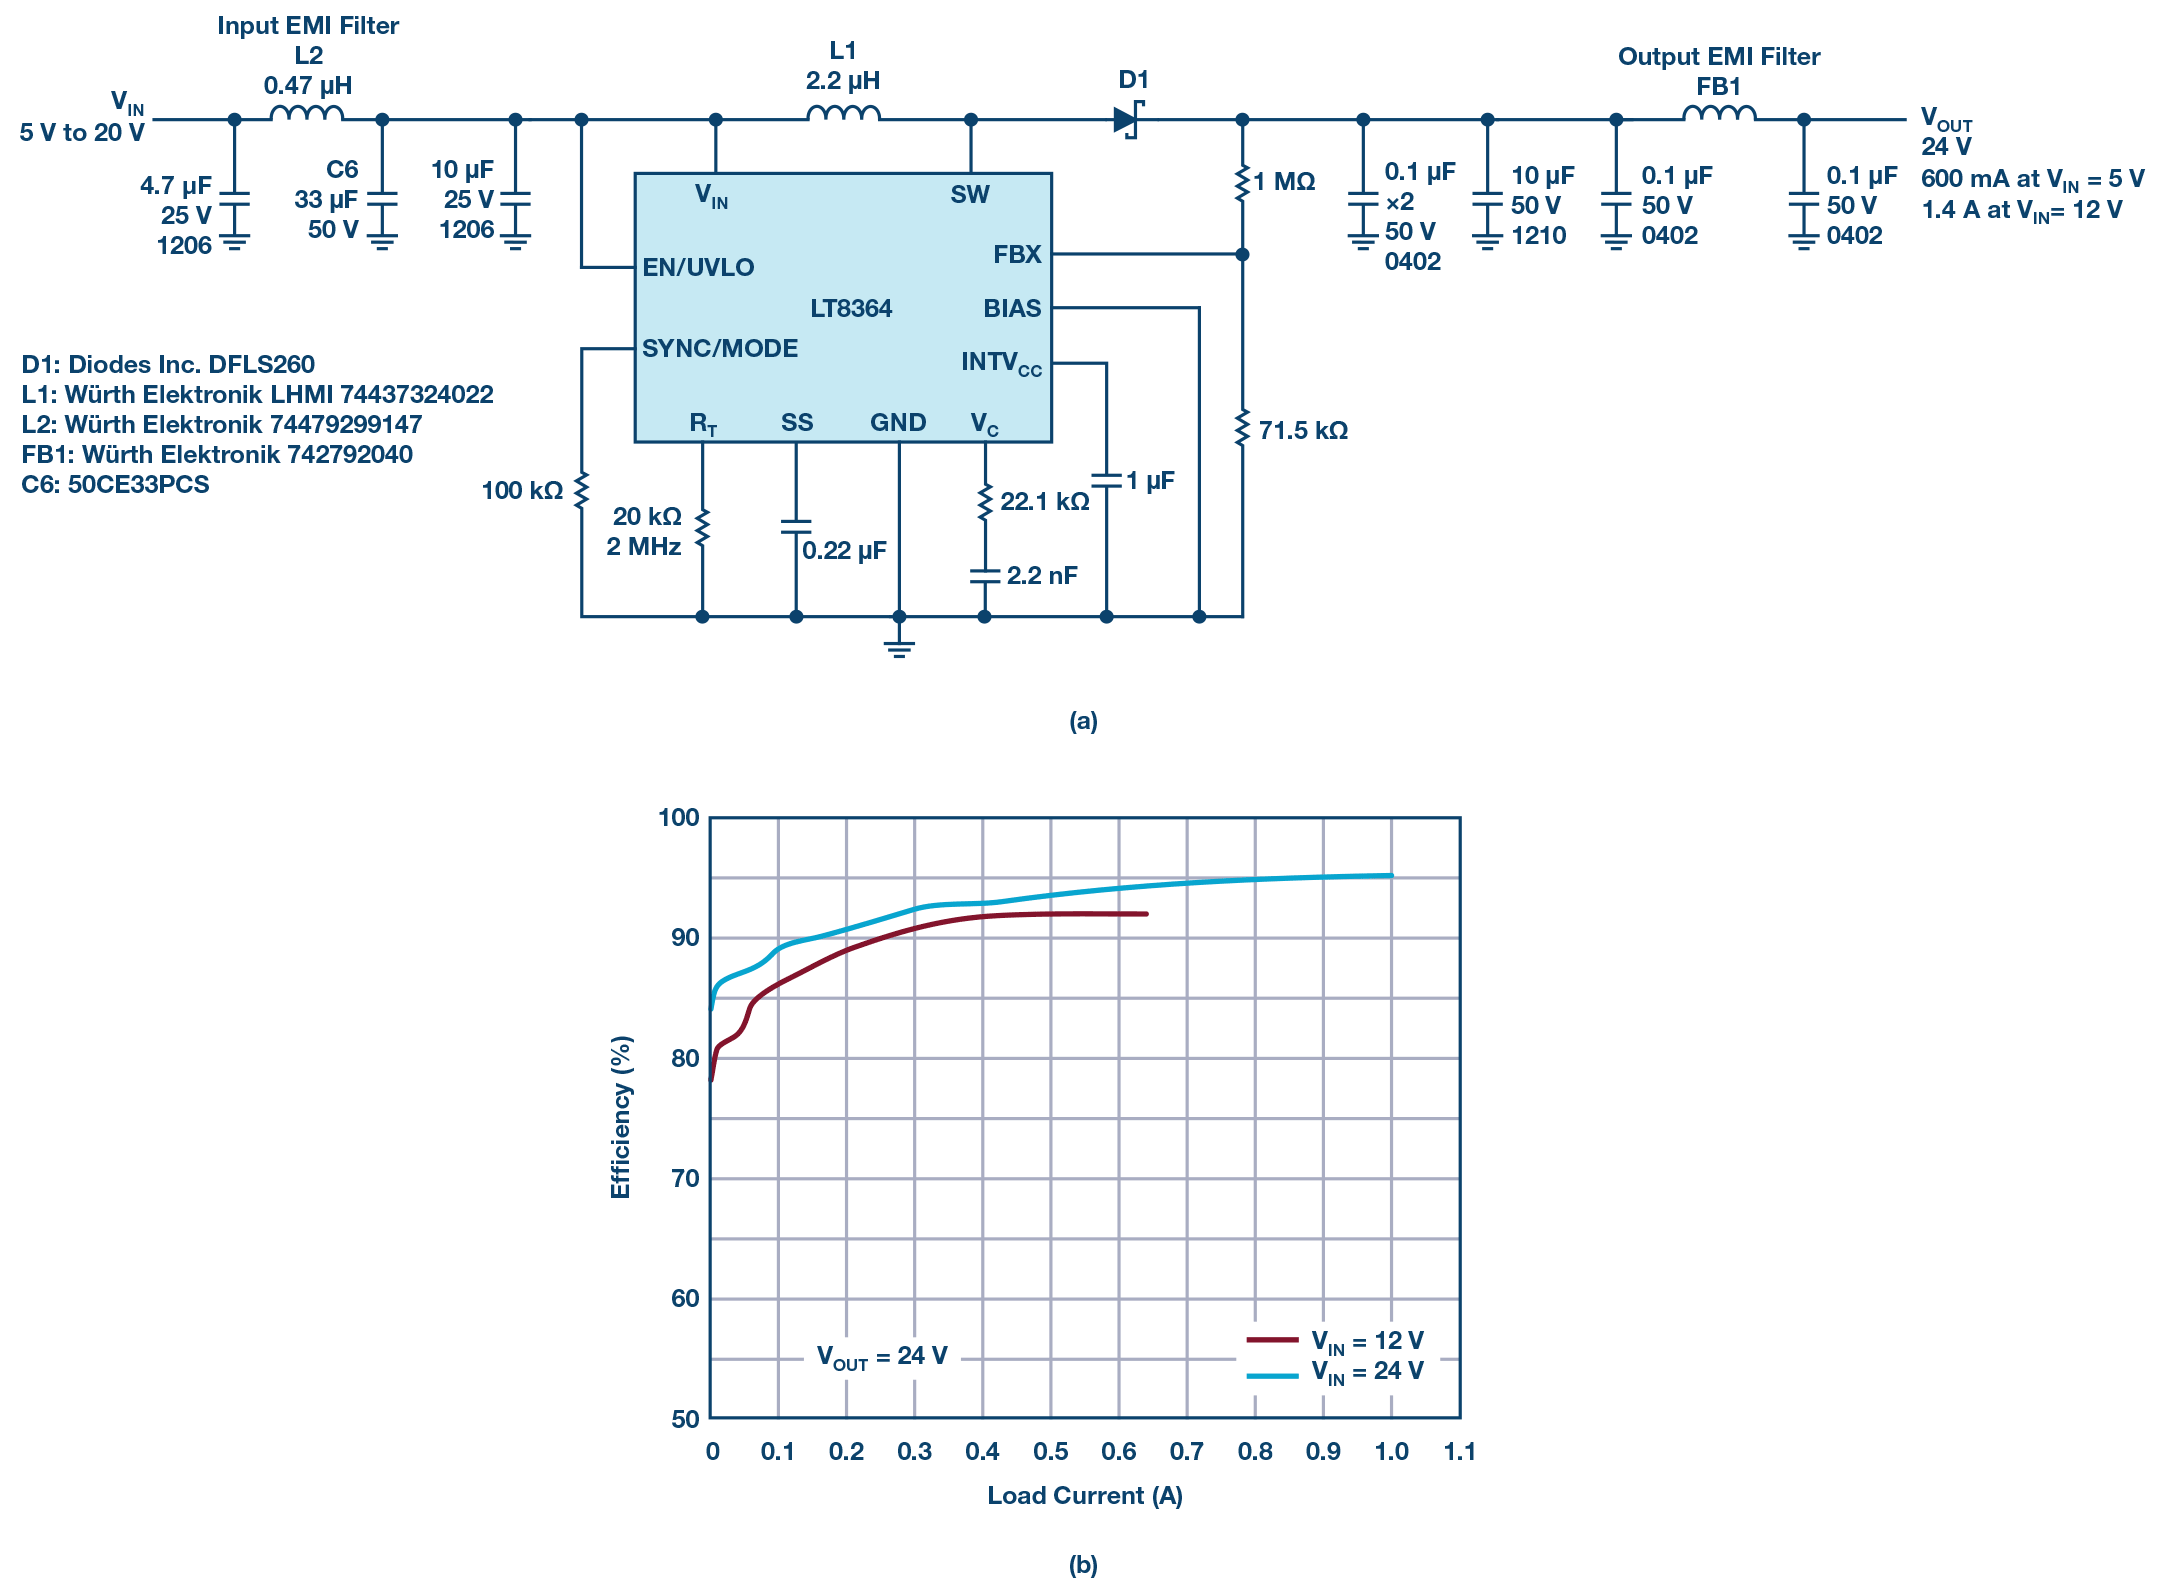 图7.LT8364、2 MHz、24 V输出升压转换器符合CISPR 25 Class 5 EMI标准（见图4）